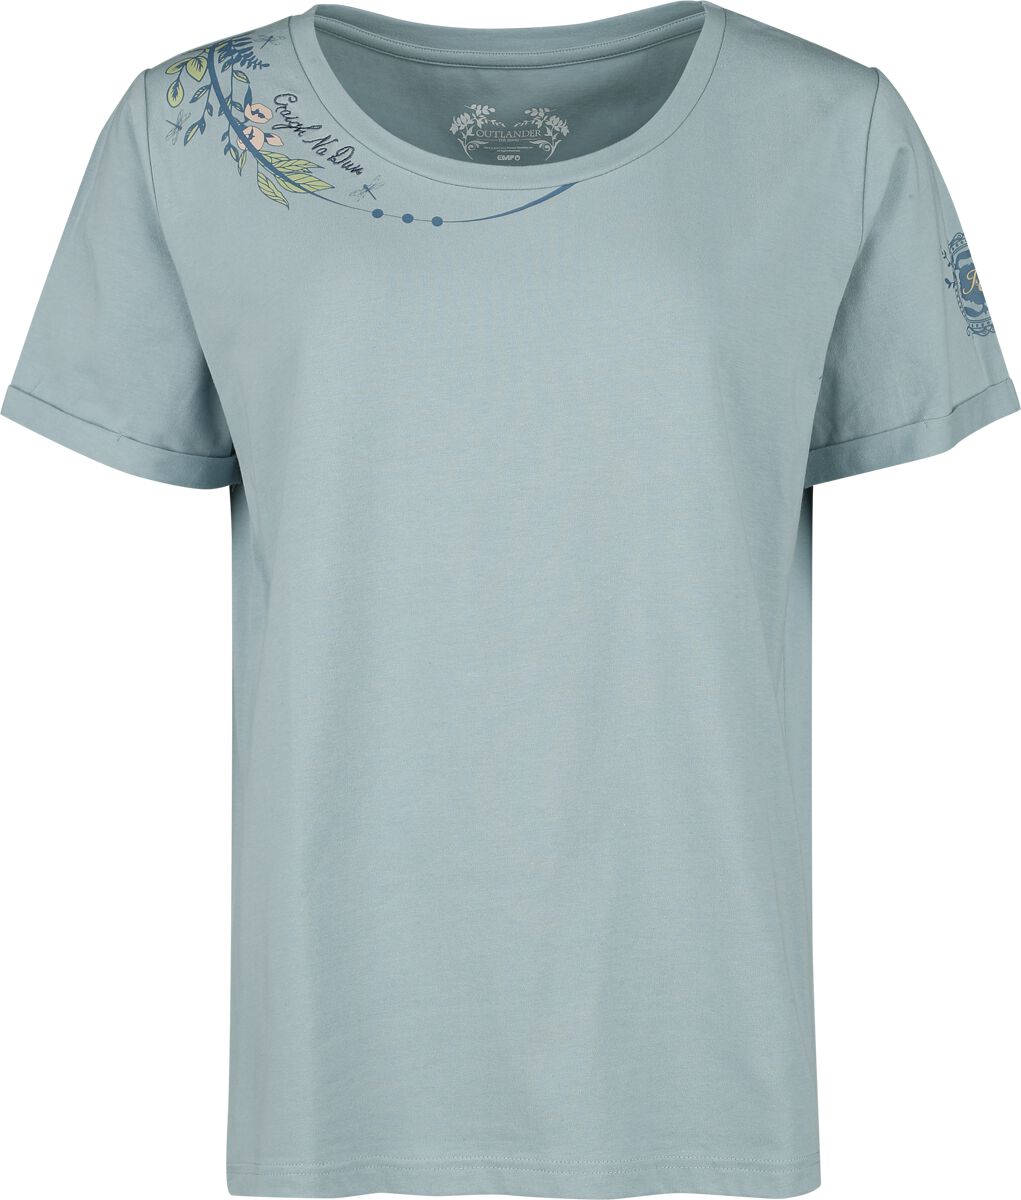 Outlander T-Shirt - Craigh Na Dun - S bis XXL - für Damen - Größe L - blau  - EMP exklusives Merchandise!